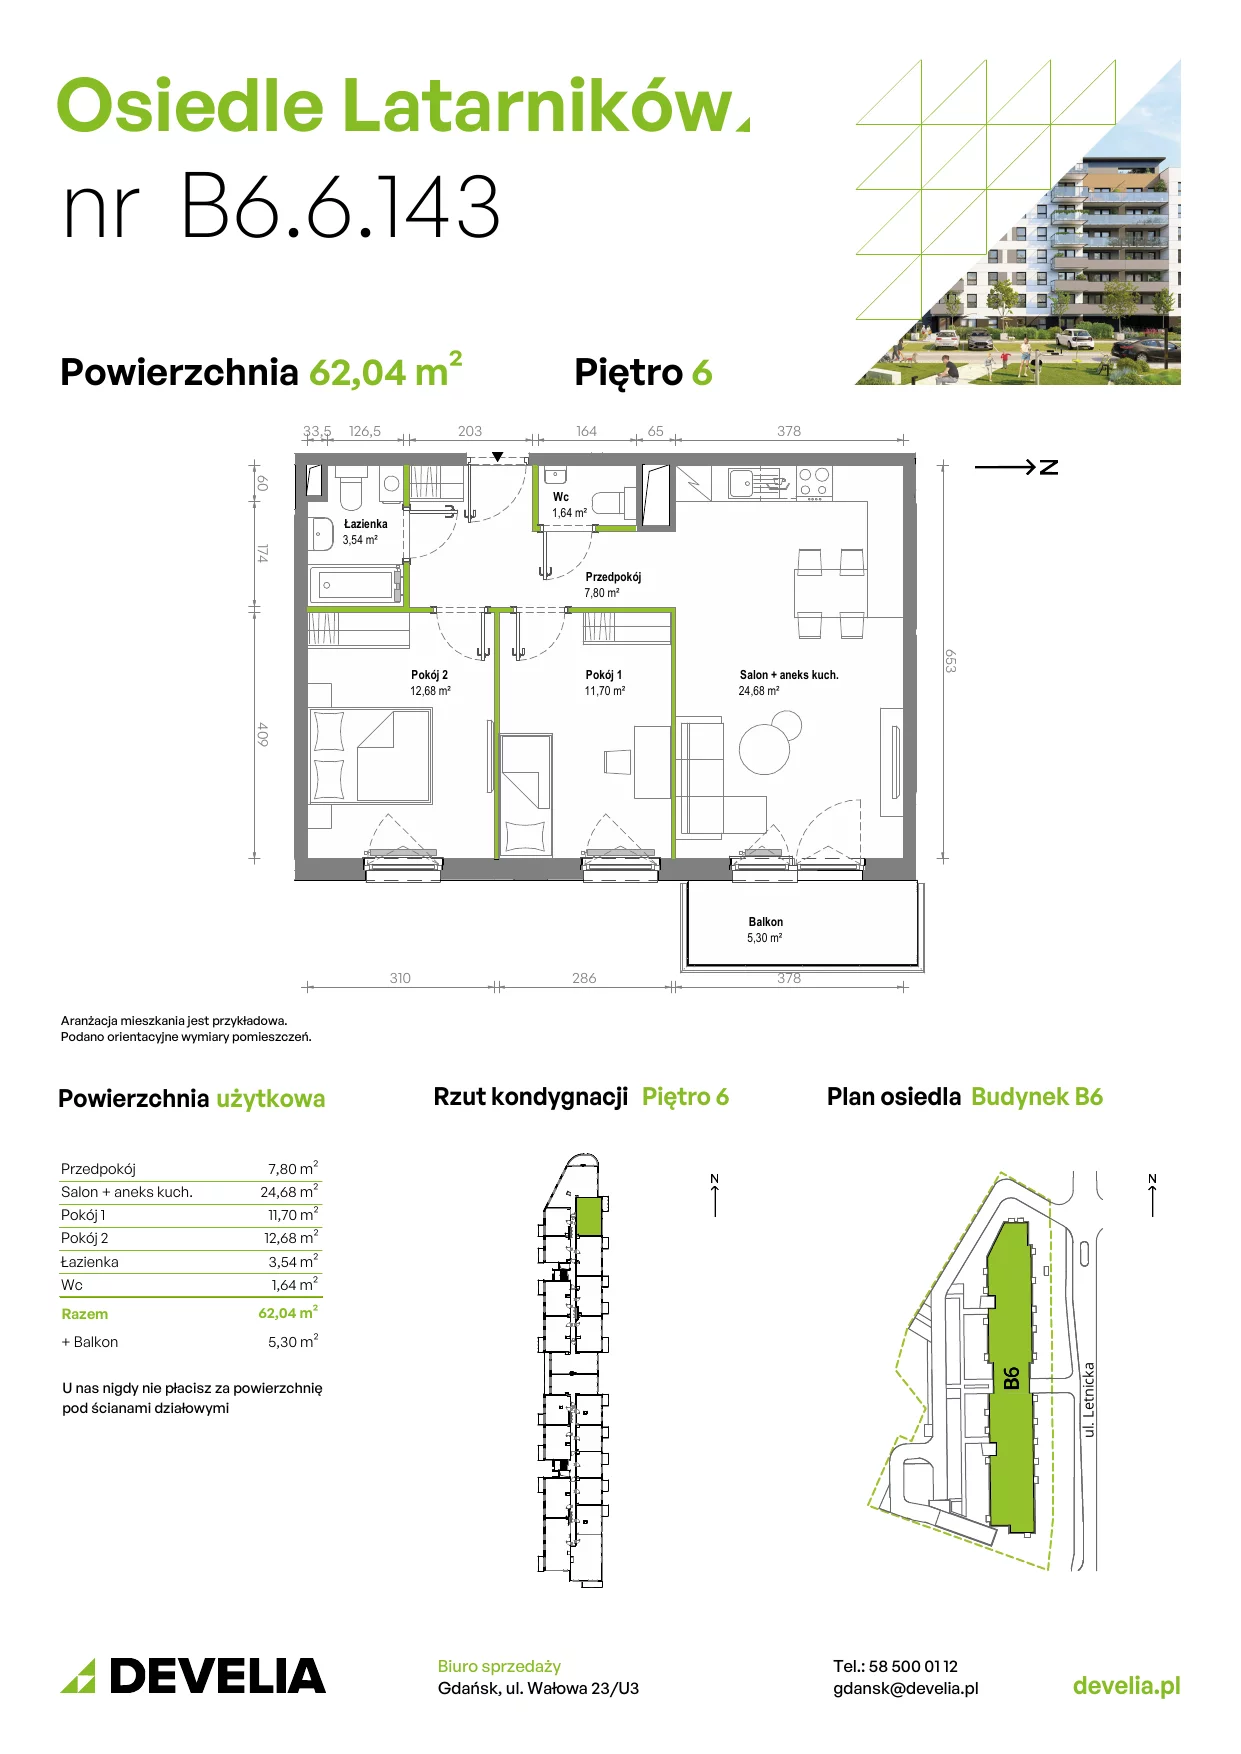 Mieszkanie 61,96 m², piętro 6, oferta nr B6.6.143, Osiedle Latarników, Gdańsk, Letnica, ul. Letnicka 1